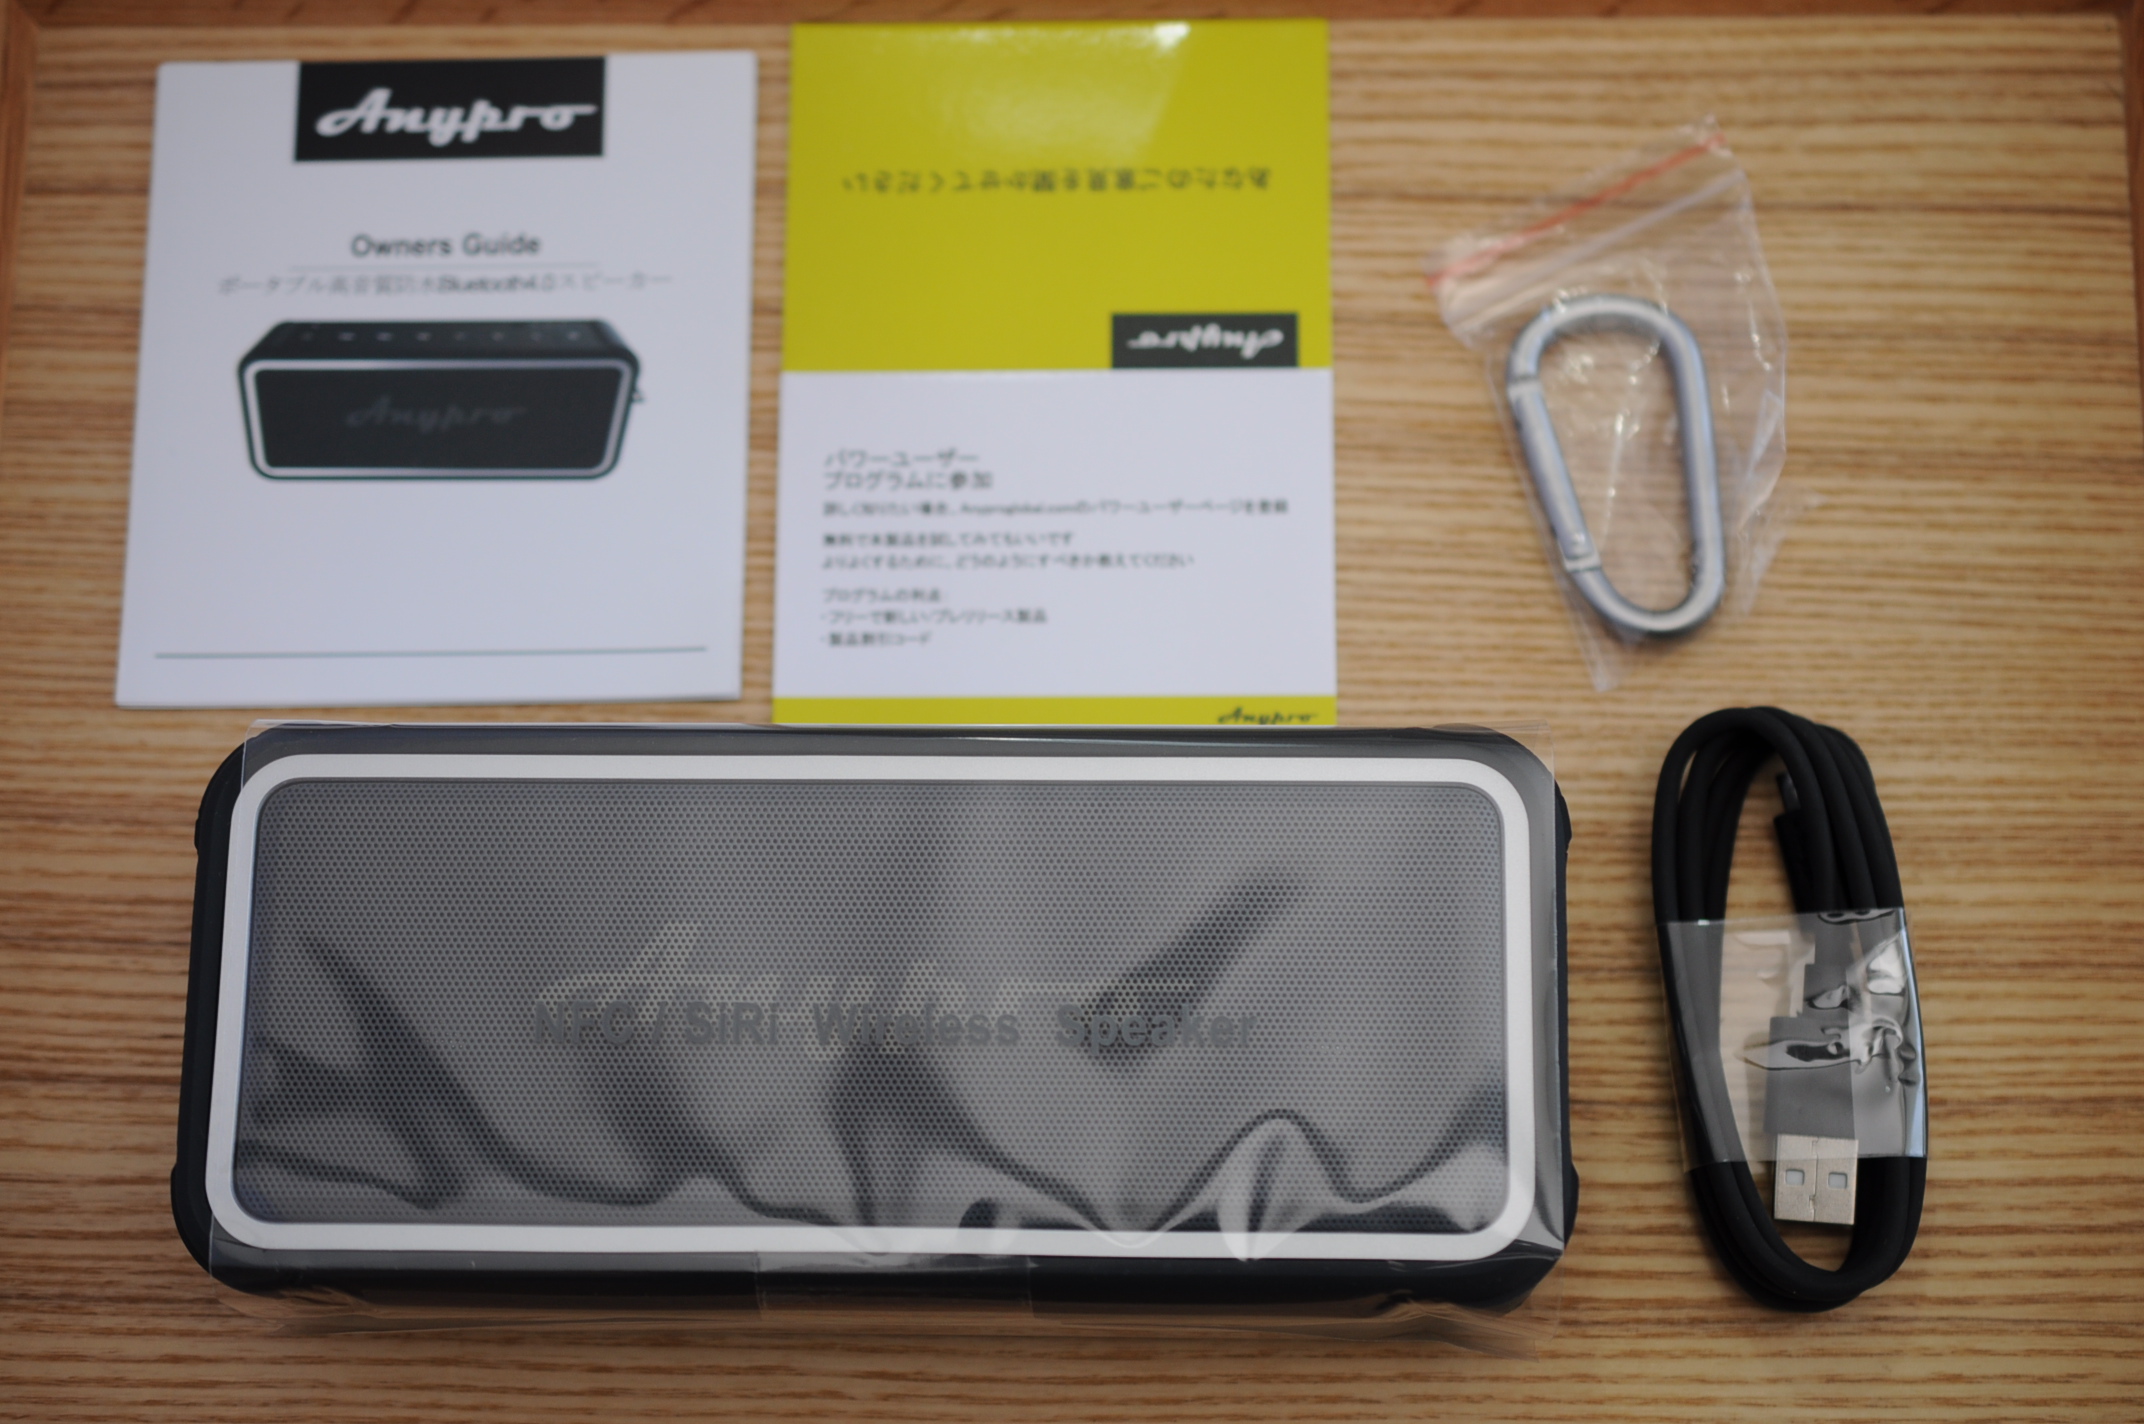 660円 期間限定今なら送料無料 Anypro Q1 HD-895 防水Bluetoothスピーカー